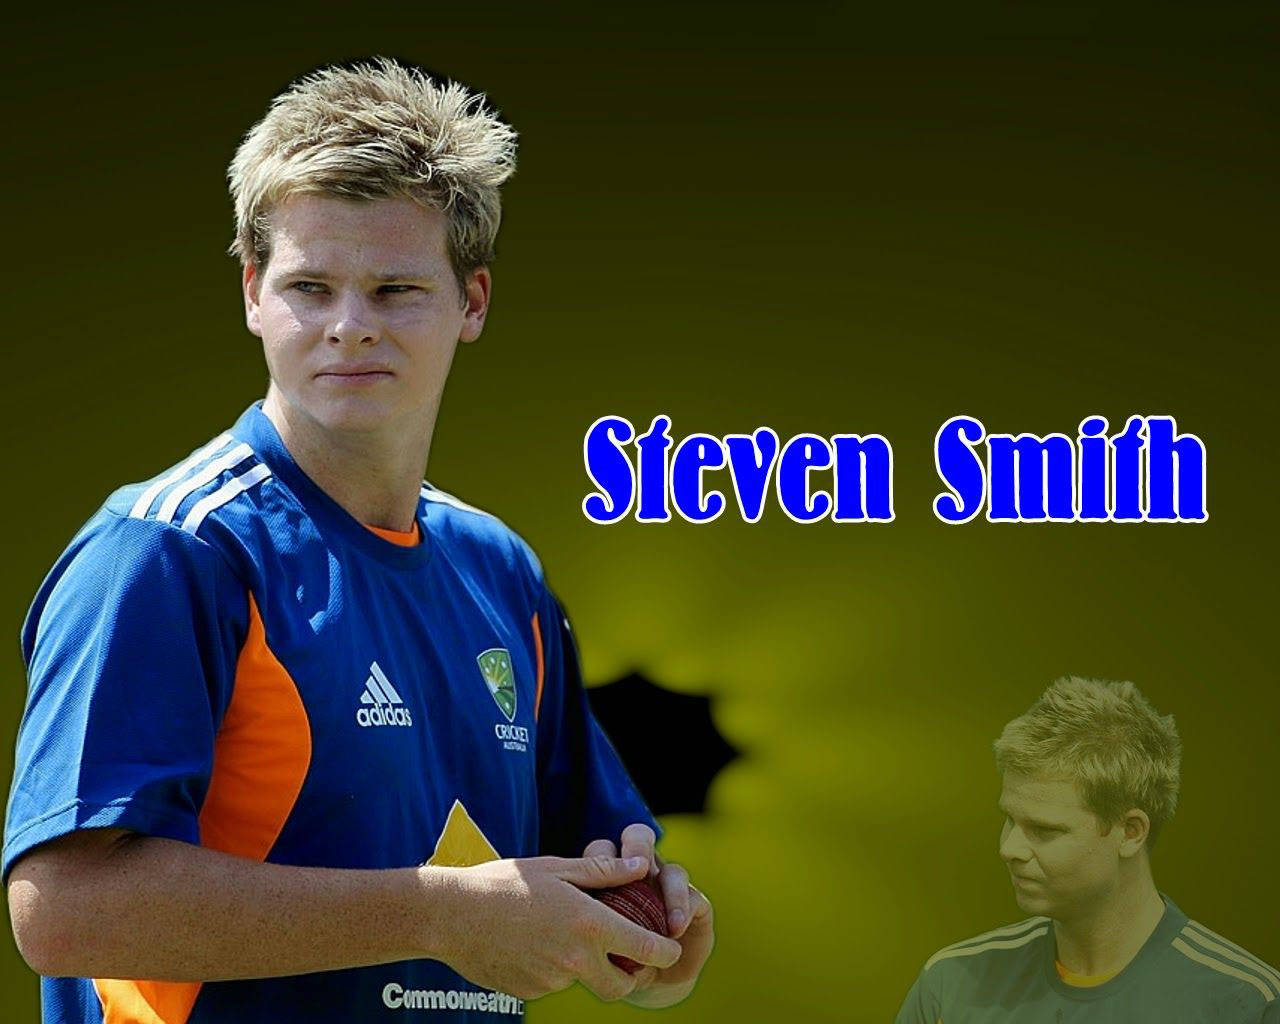 Stevesmith Australischer Cricketspieler Wallpaper